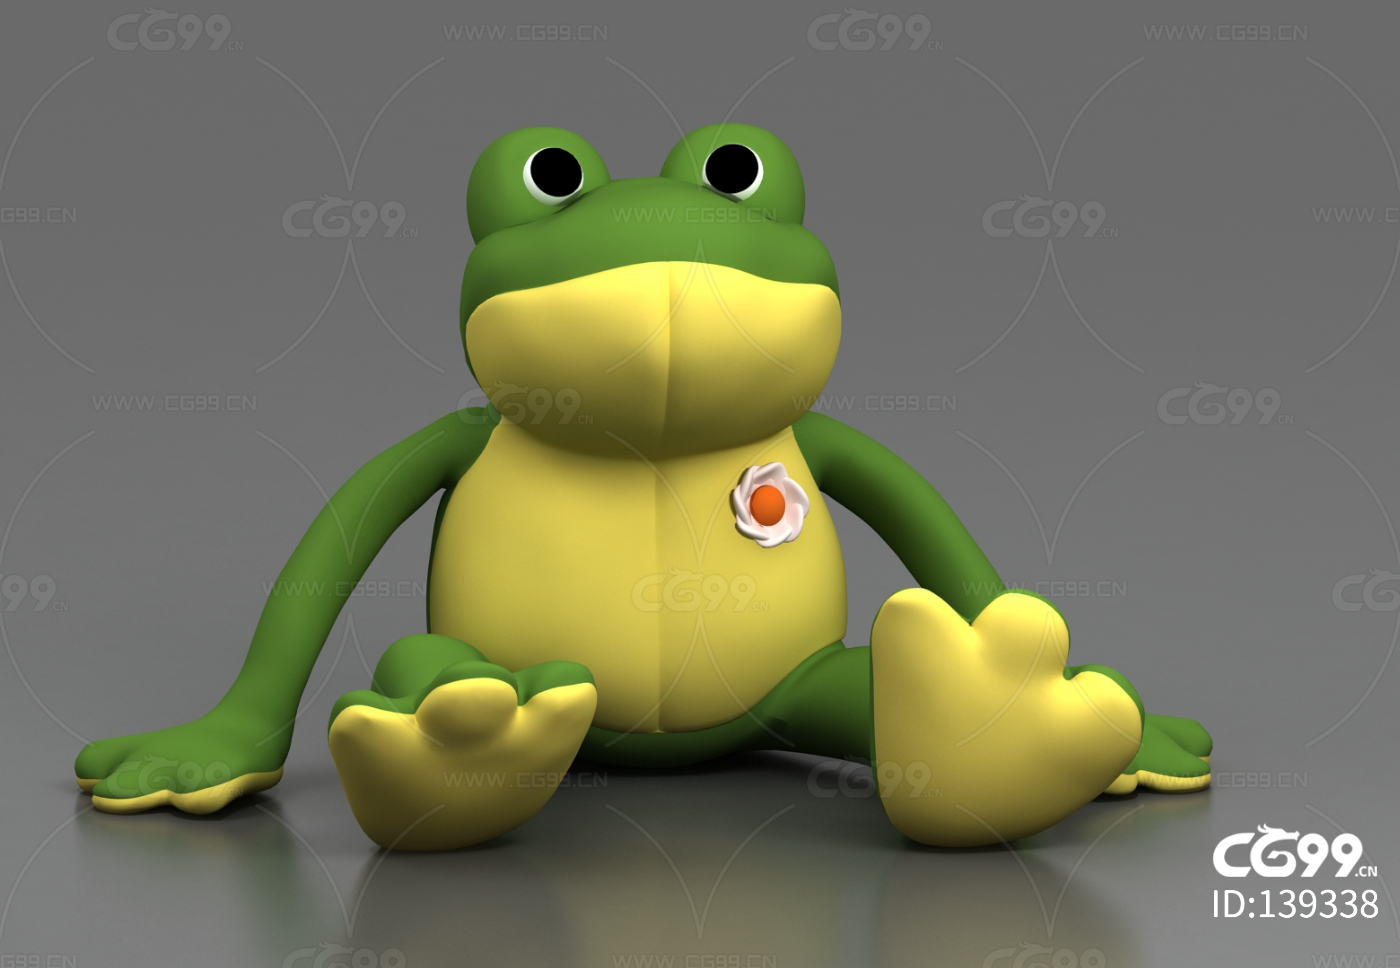 网红青蛙拉拉乐解压青蛙怪拉拉变形青蛙创意玩具新奇特青蛙减压外-阿里巴巴